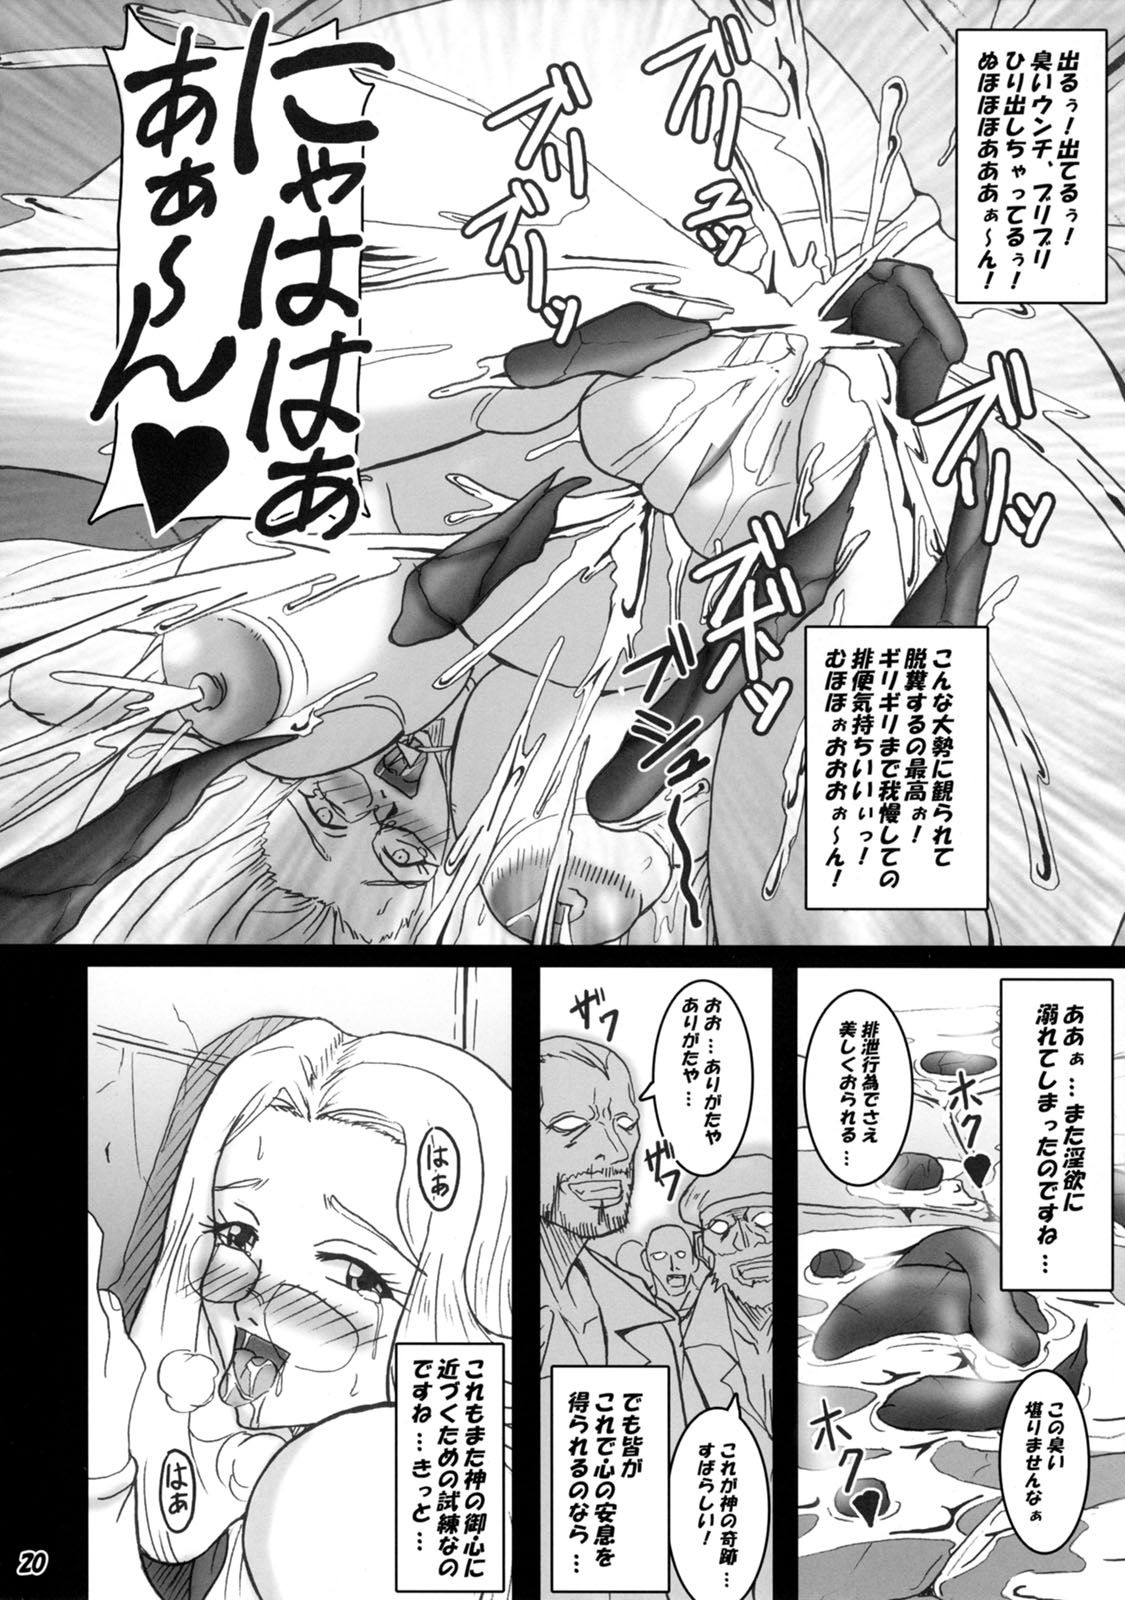 [MEAN MACHINE (Seijiro Mifune)] Saijo Melfa no Houetsu (Queen's Blade) page 19 full